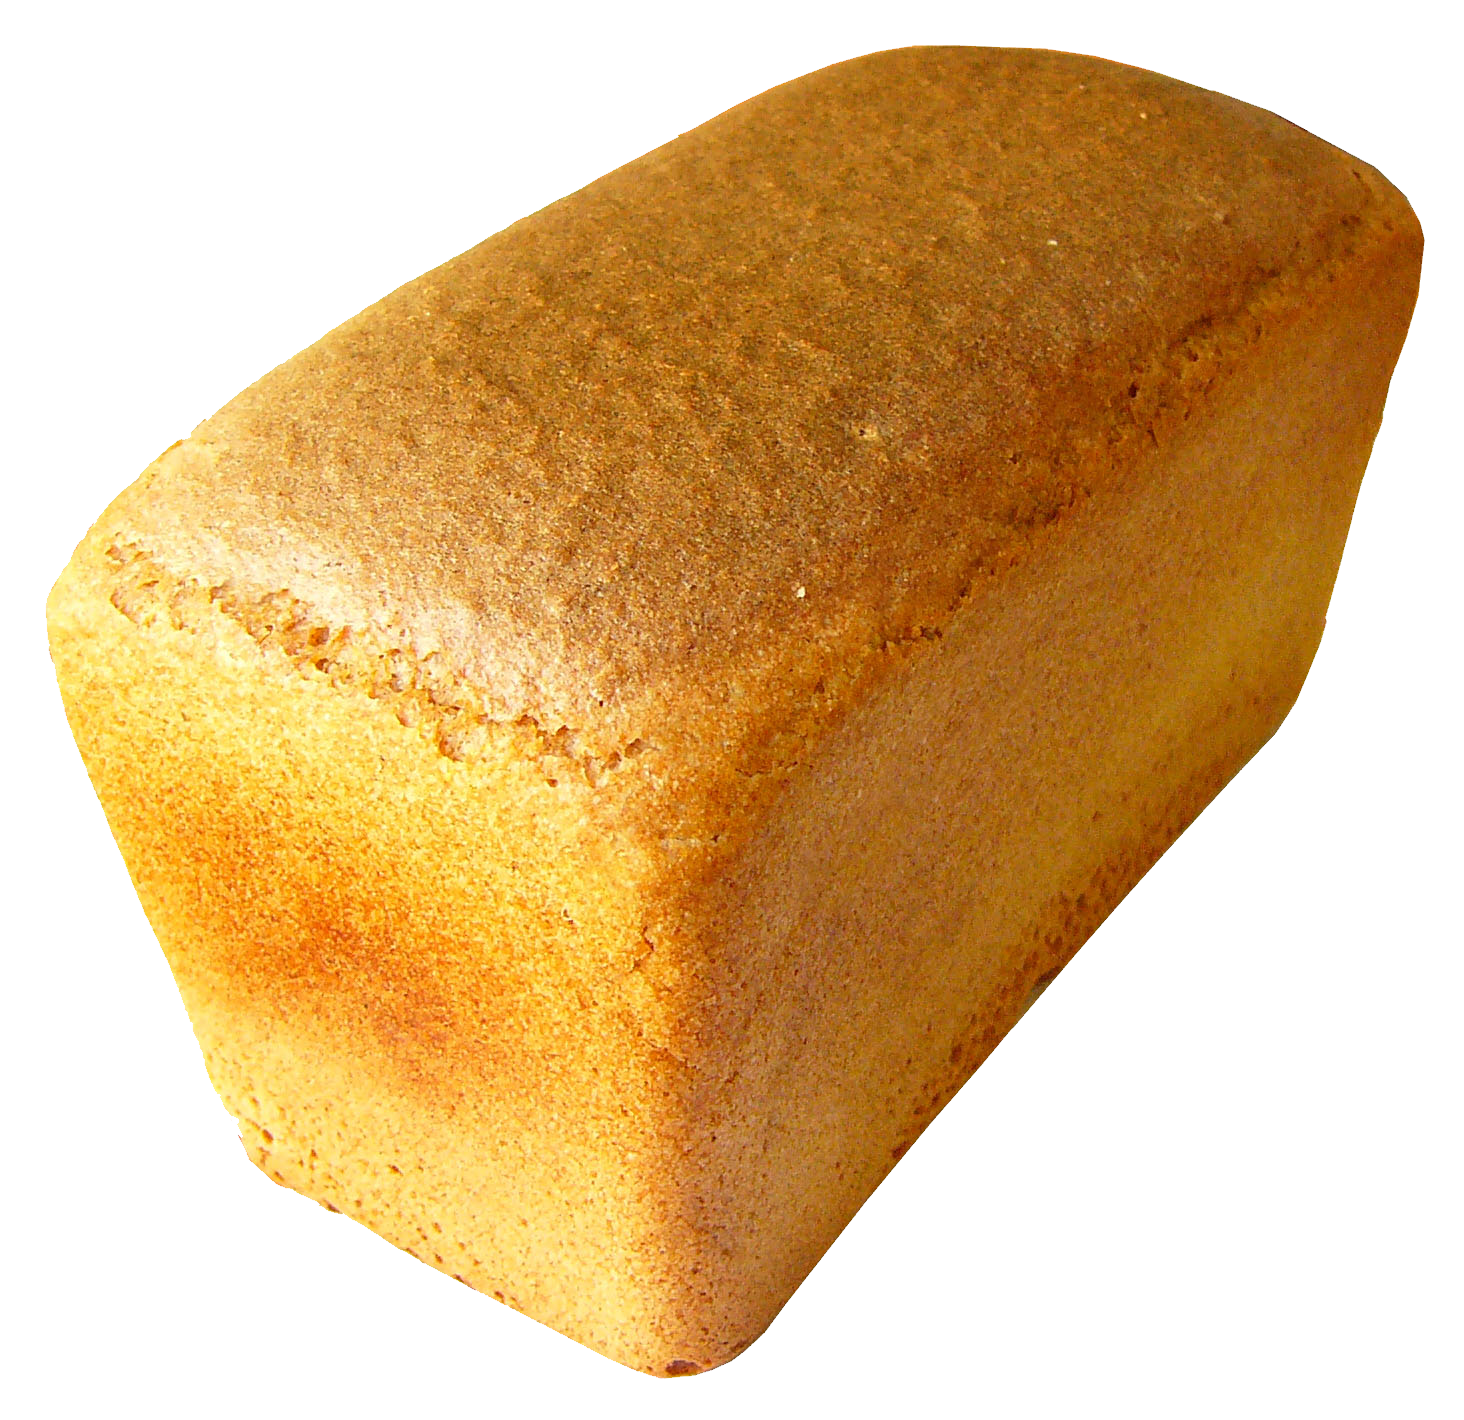 Roti putih